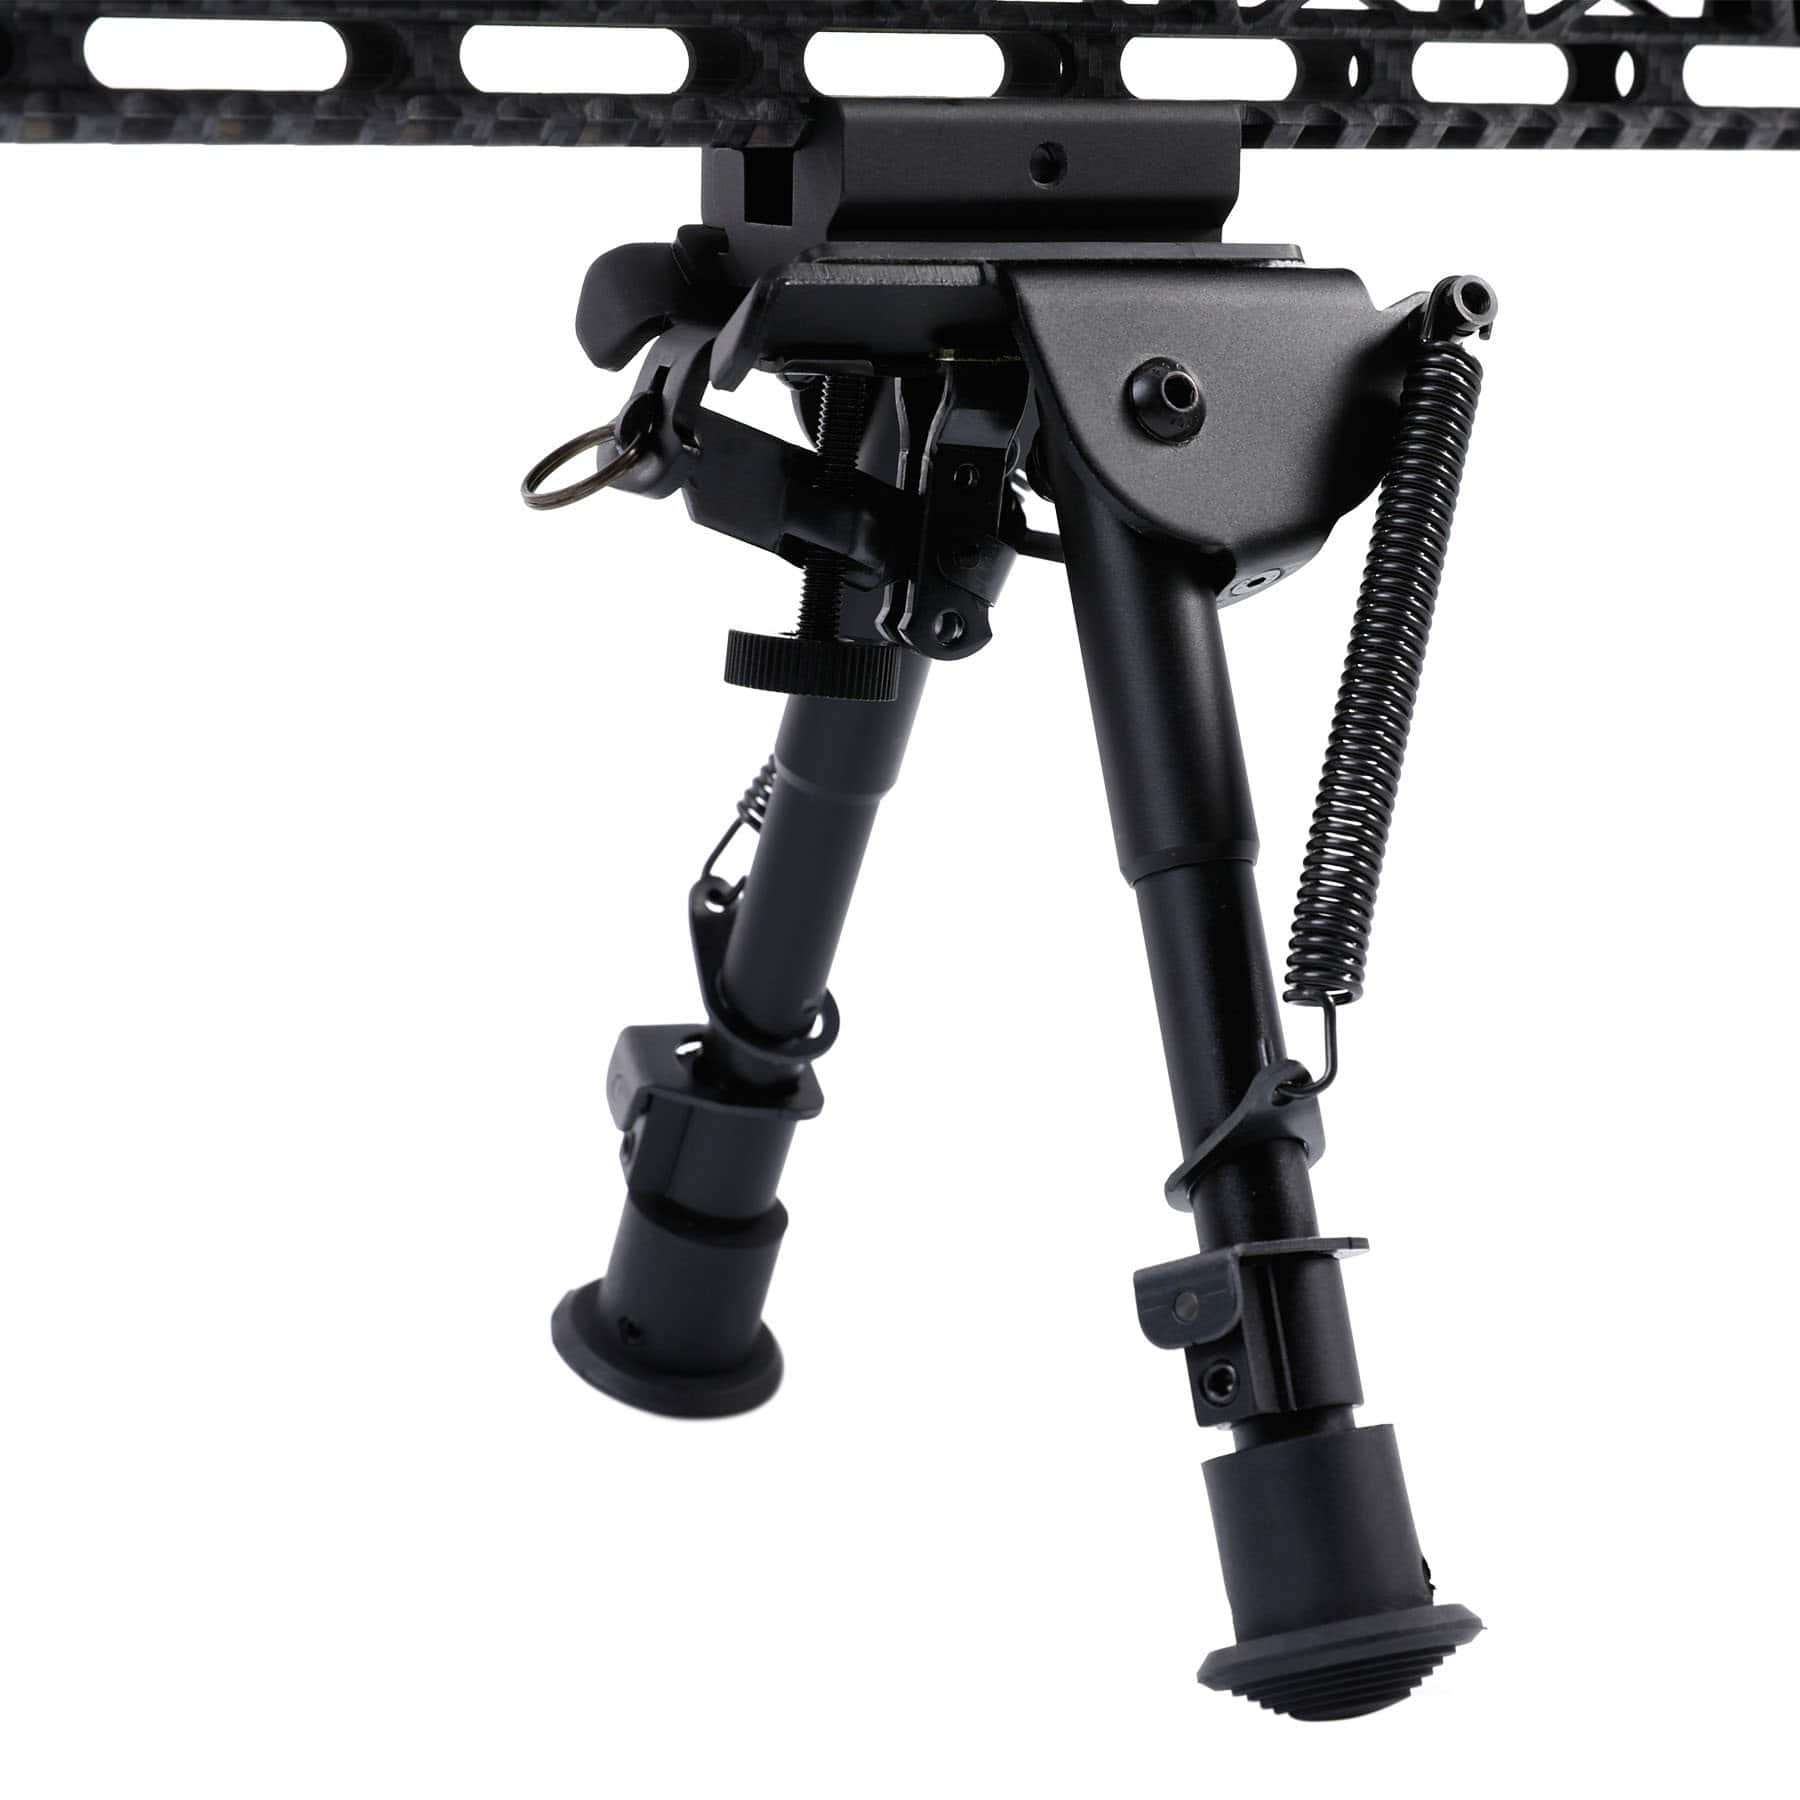  PINTY Bípode para rifle con 5 posiciones de pata, patas  ajustables de 6.5 a 9.5 pulgadas y compatibilidad Picatinny de 20 a 0.866  in, accesorio táctico con estructura de aluminio giratoria